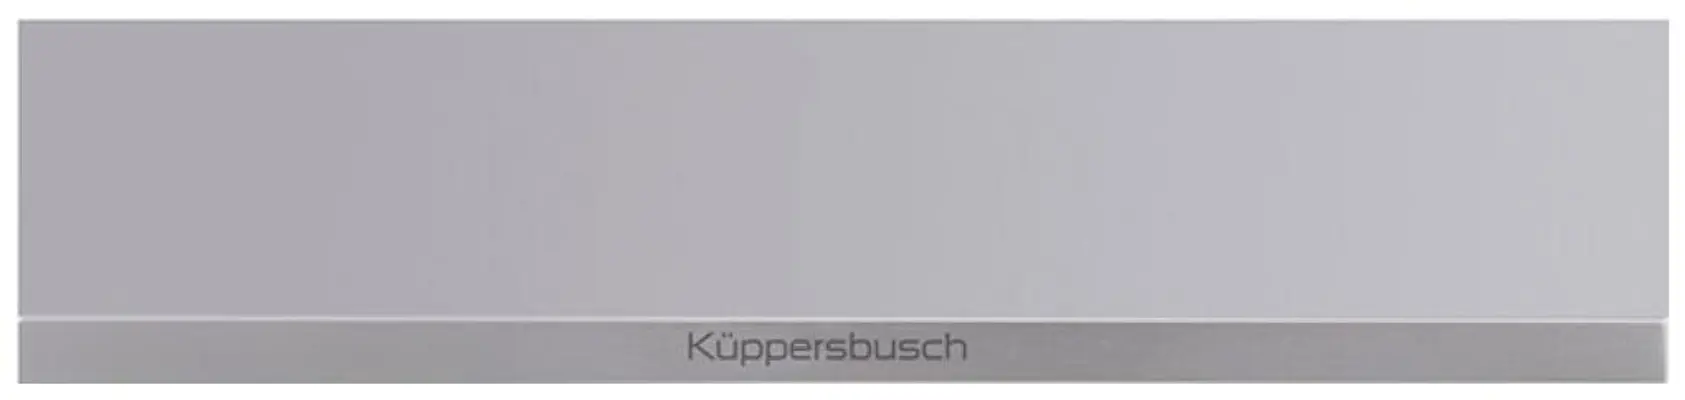 CSV68000-Kuppersbusch-Vacu%C3%BCmsystemen